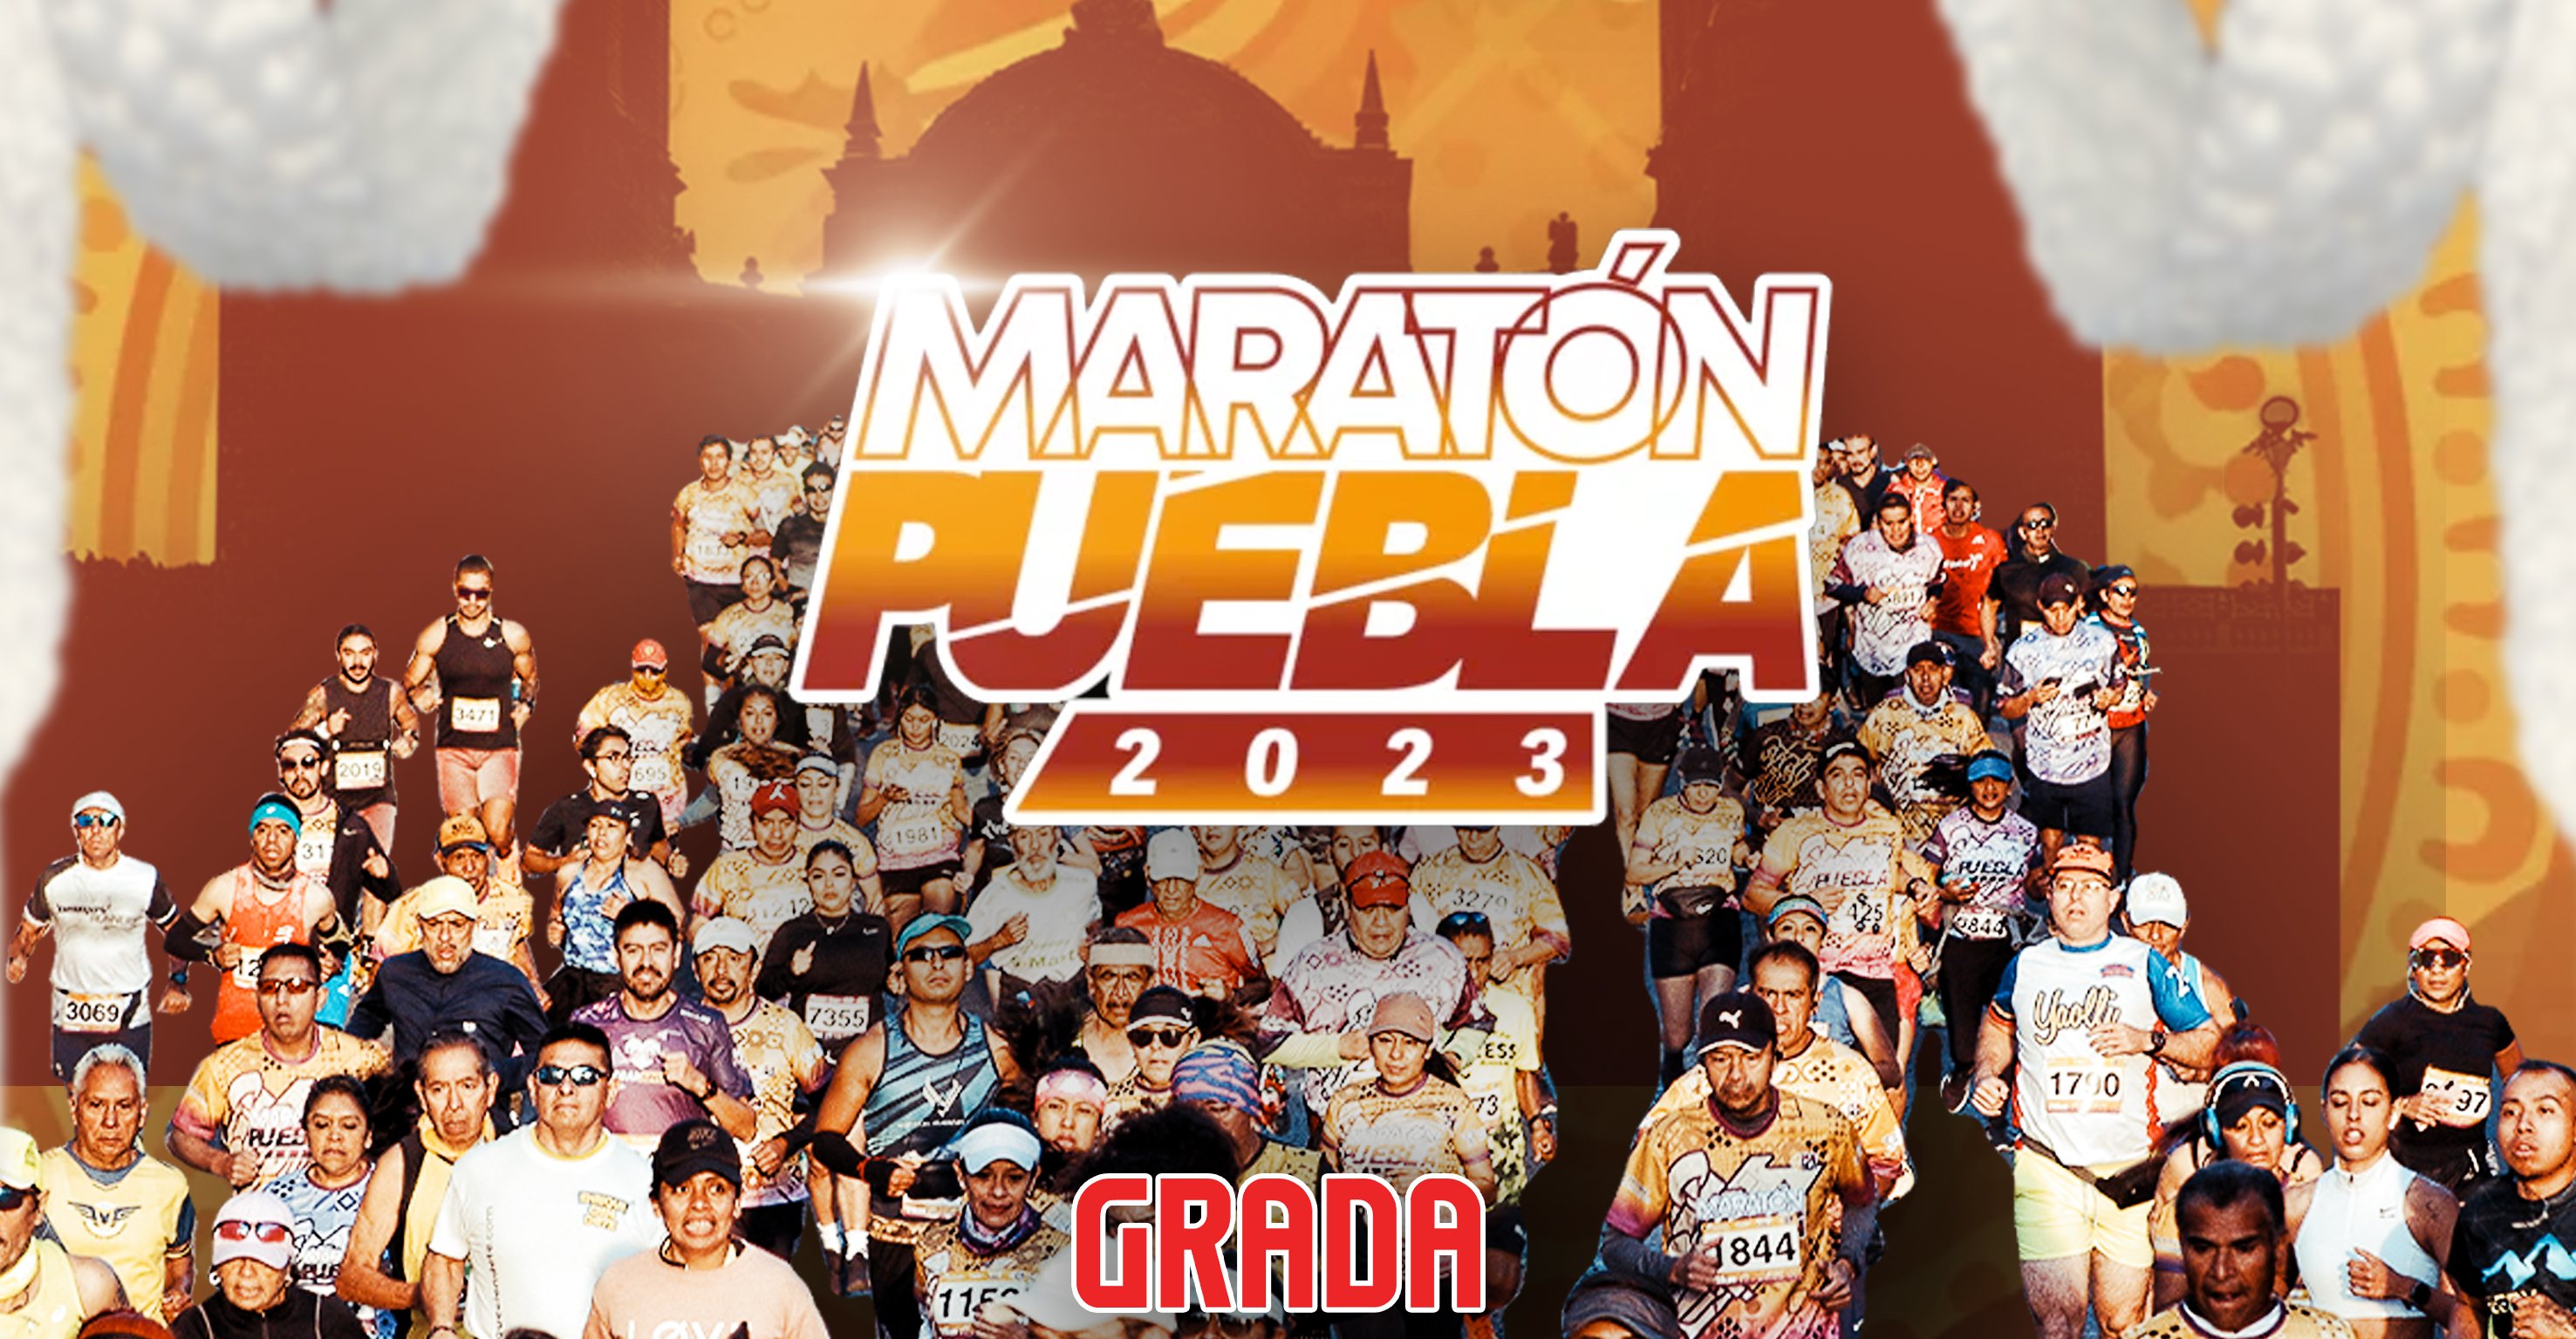 ¡Abróchense los tenis! Llega el Maratón Puebla 2023